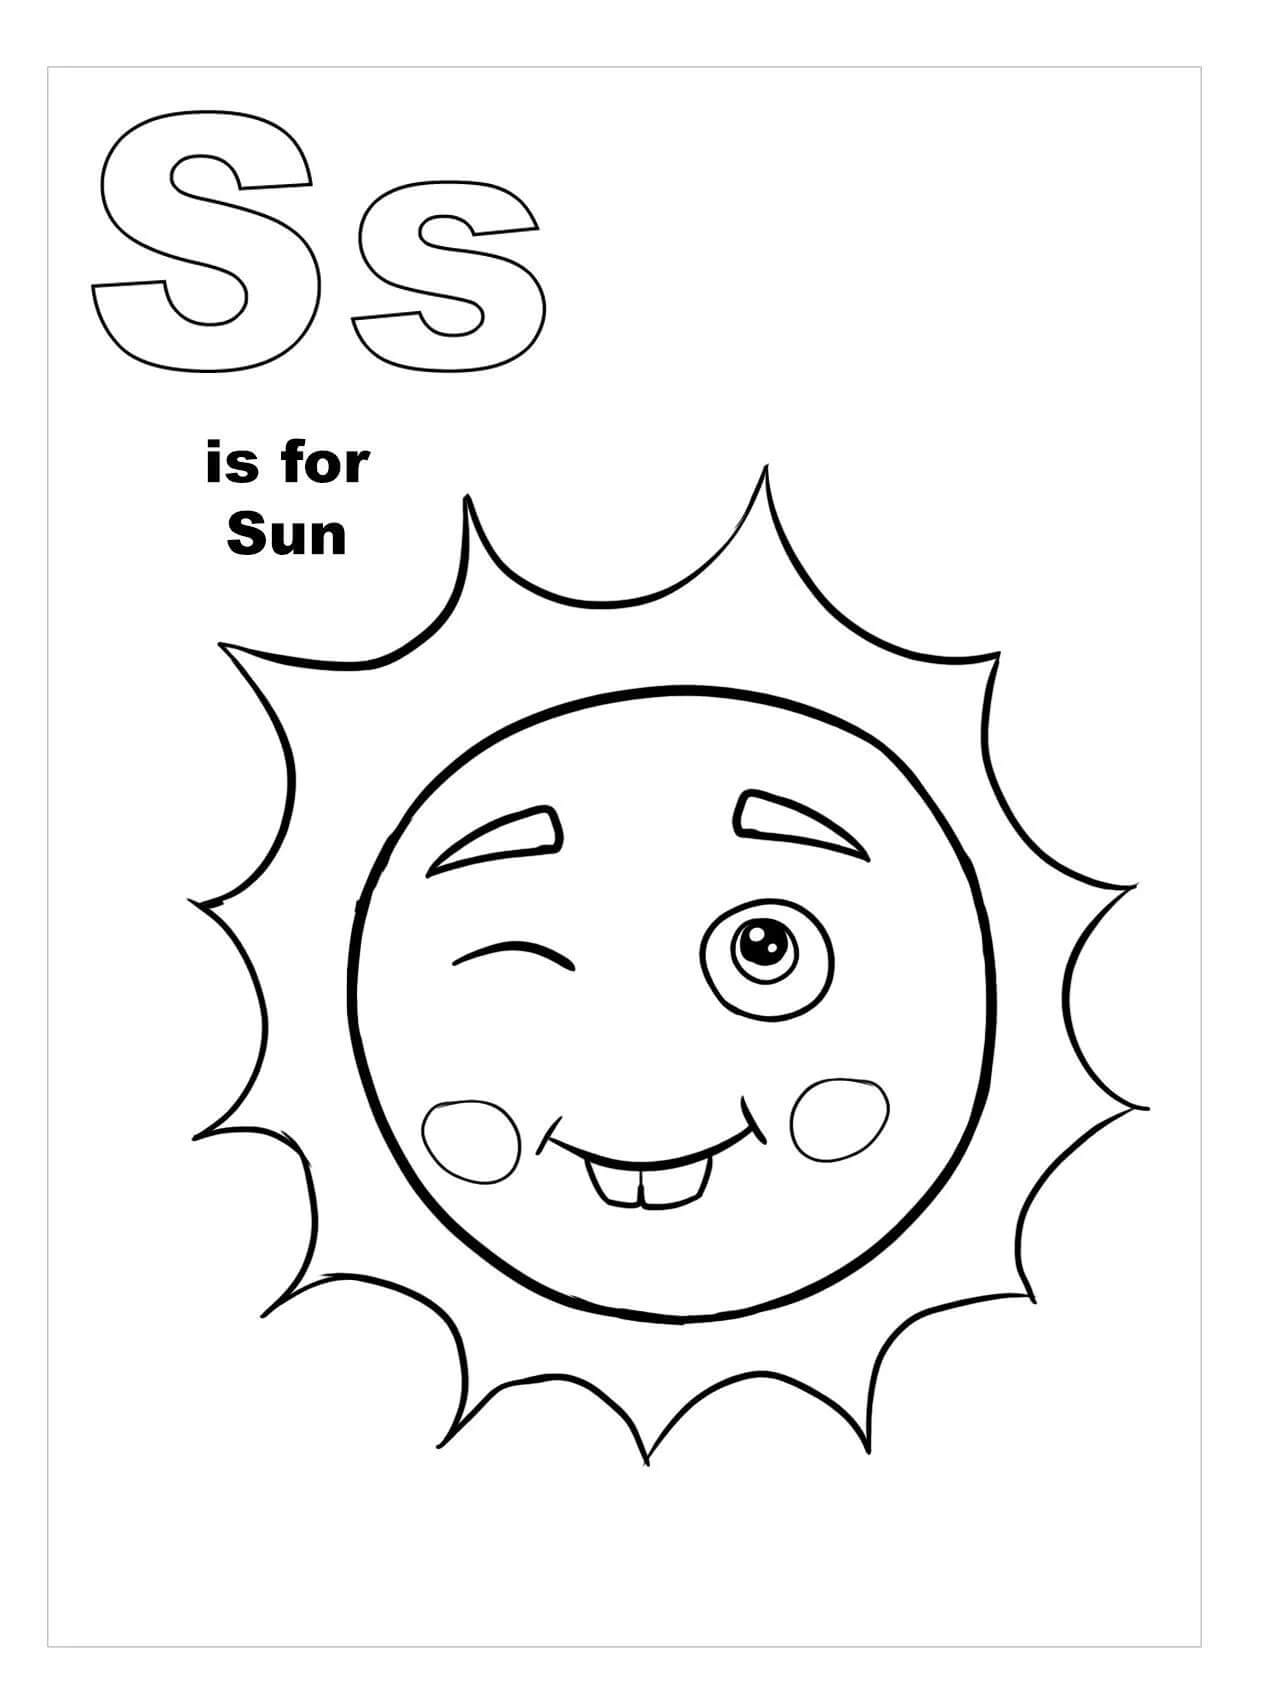 문자 S는 Sun을 의미합니다. coloring page